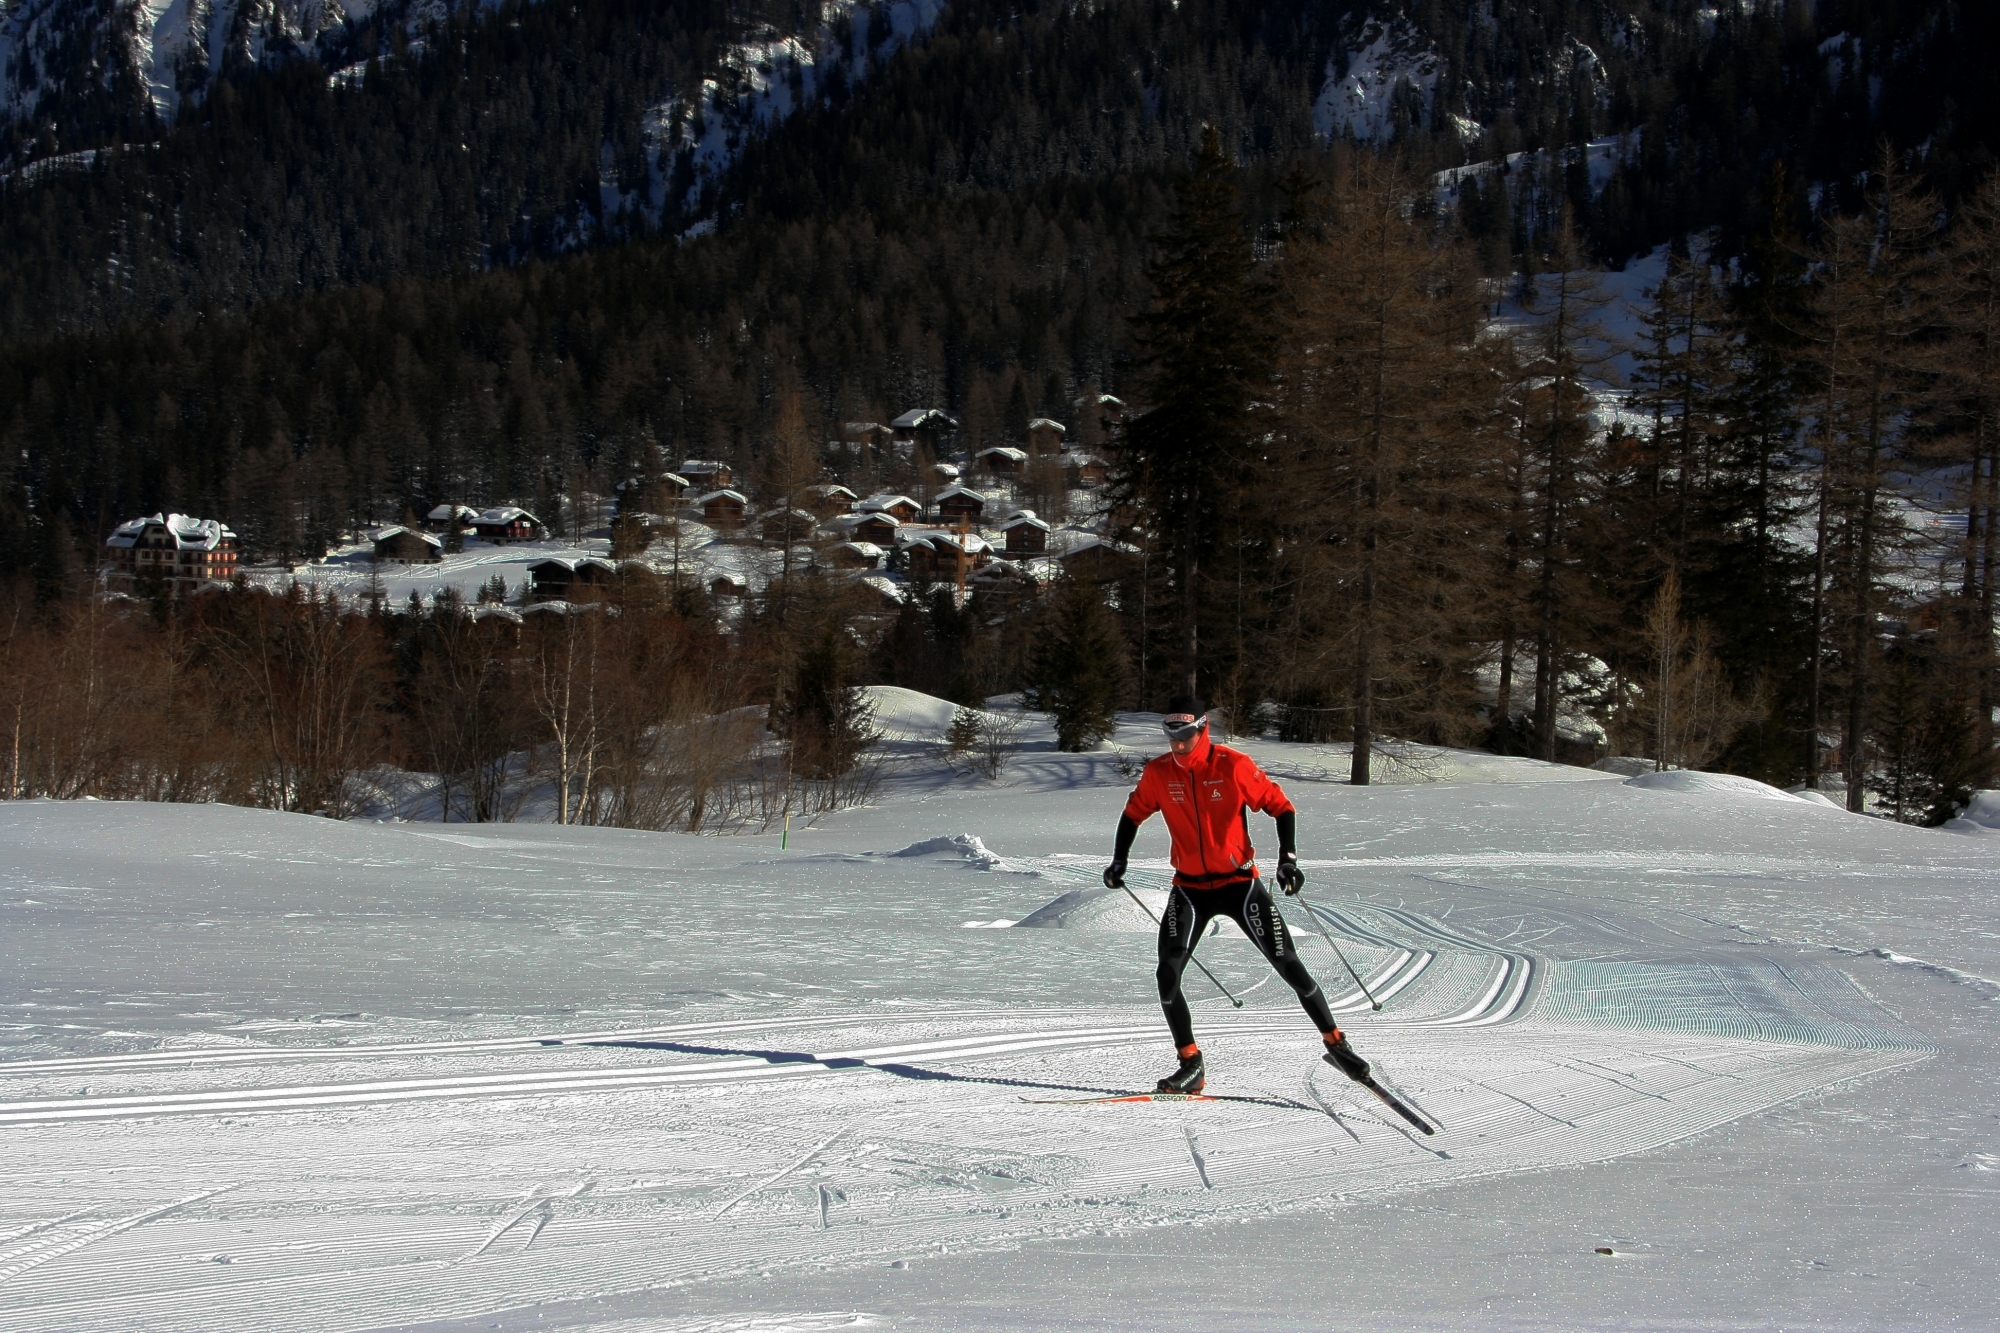 La piste de La Fouly est idéale pour les amateurs de ski de fond, qu'ils soient débutants ou avancés.